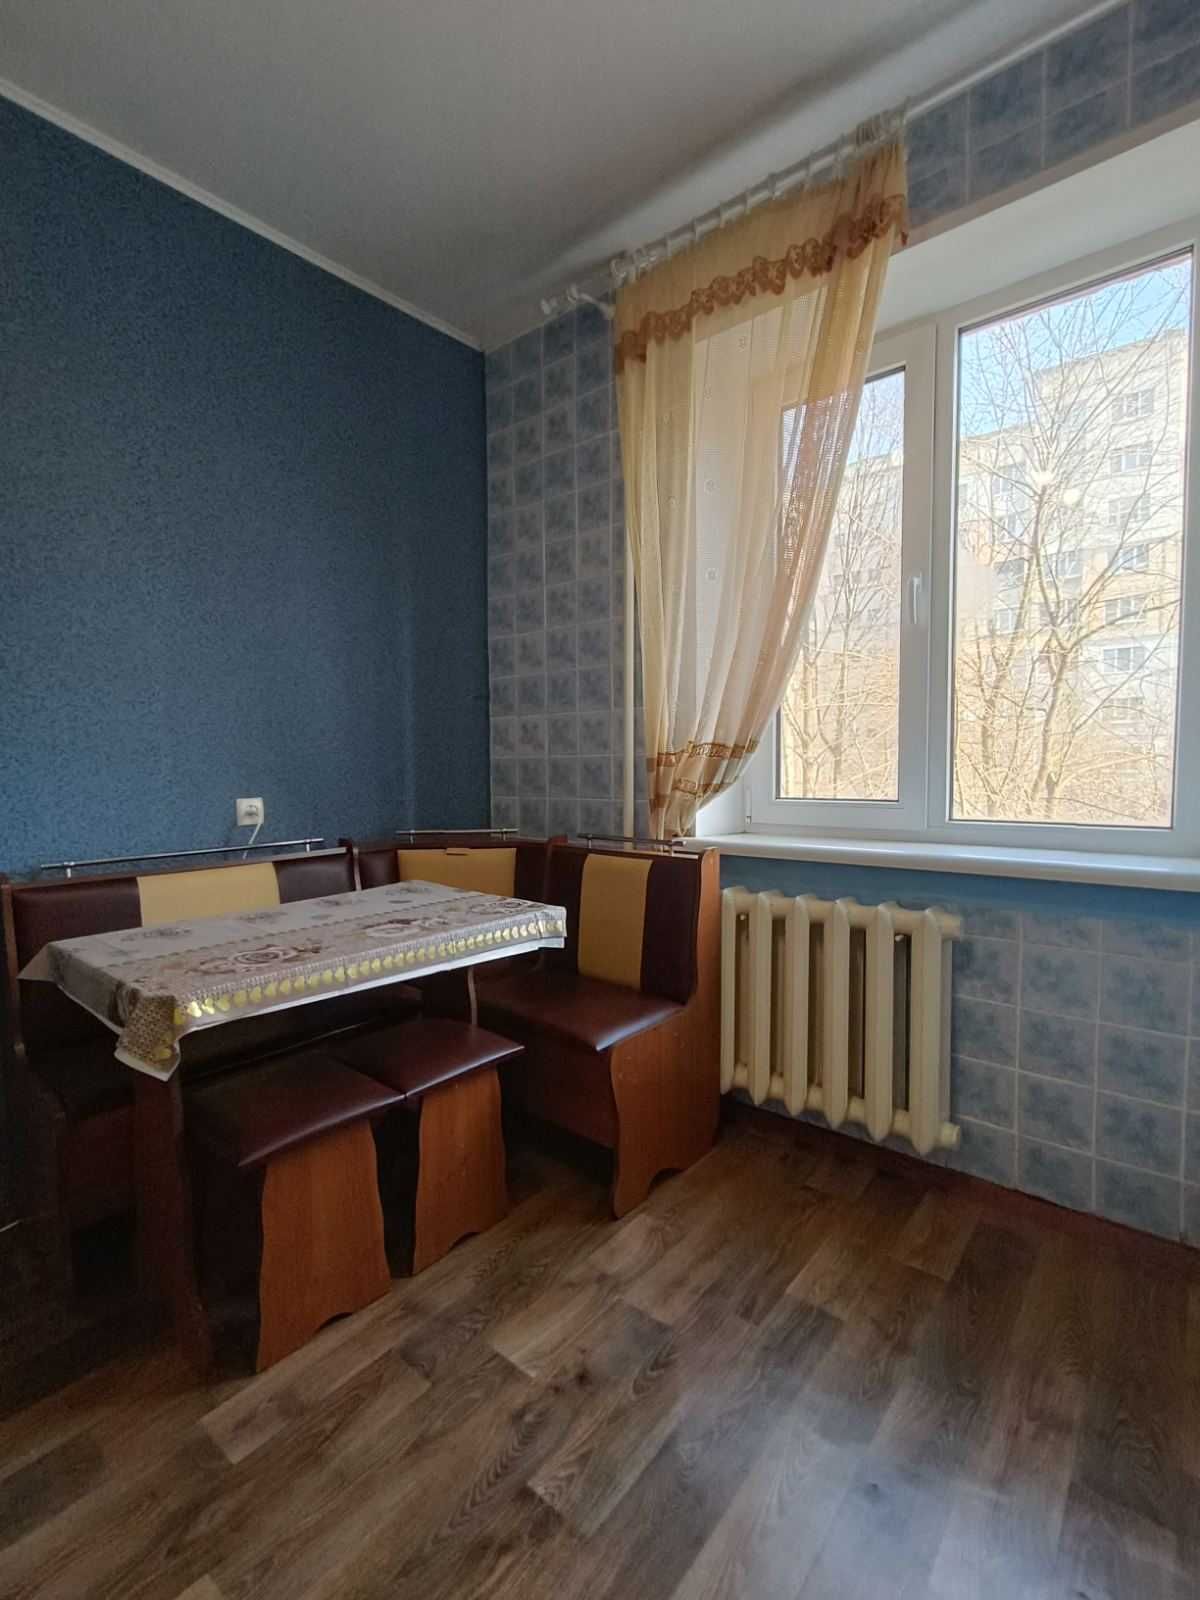 Продам 1 - кімнатну  квартиру  35 м2  за 29800 у.о